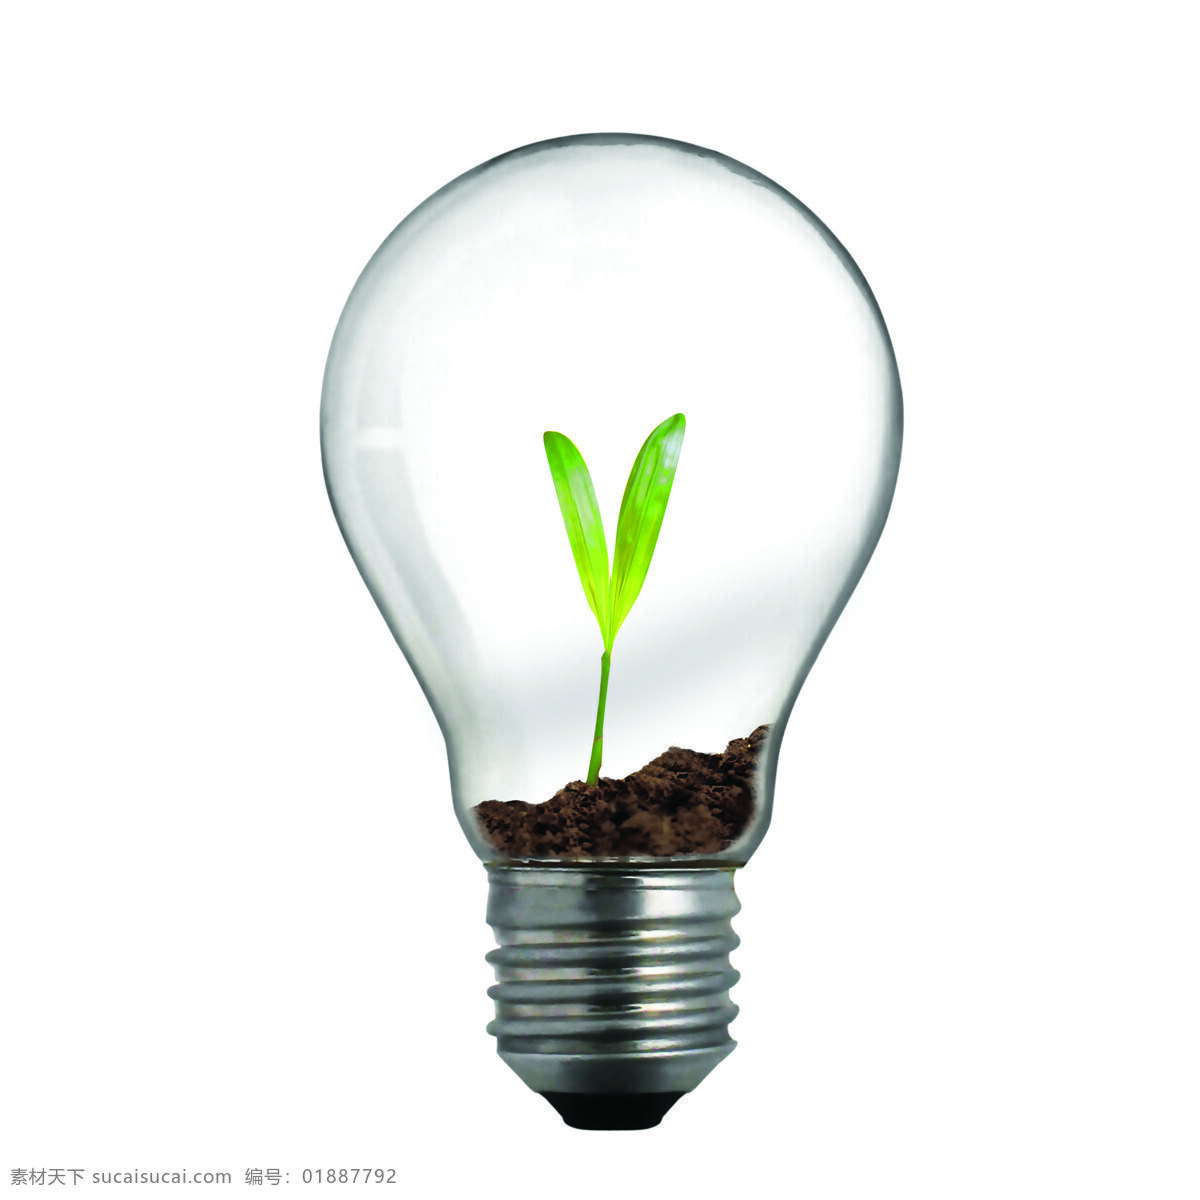 灯泡里的幼苗 能源概念 电灯泡 灯泡 绿色能源 环保能源 生态能源 洁净能源 可再生资源 能源环保 低碳 节能 螺纹 幼苗 生活用品 生活百科 白色